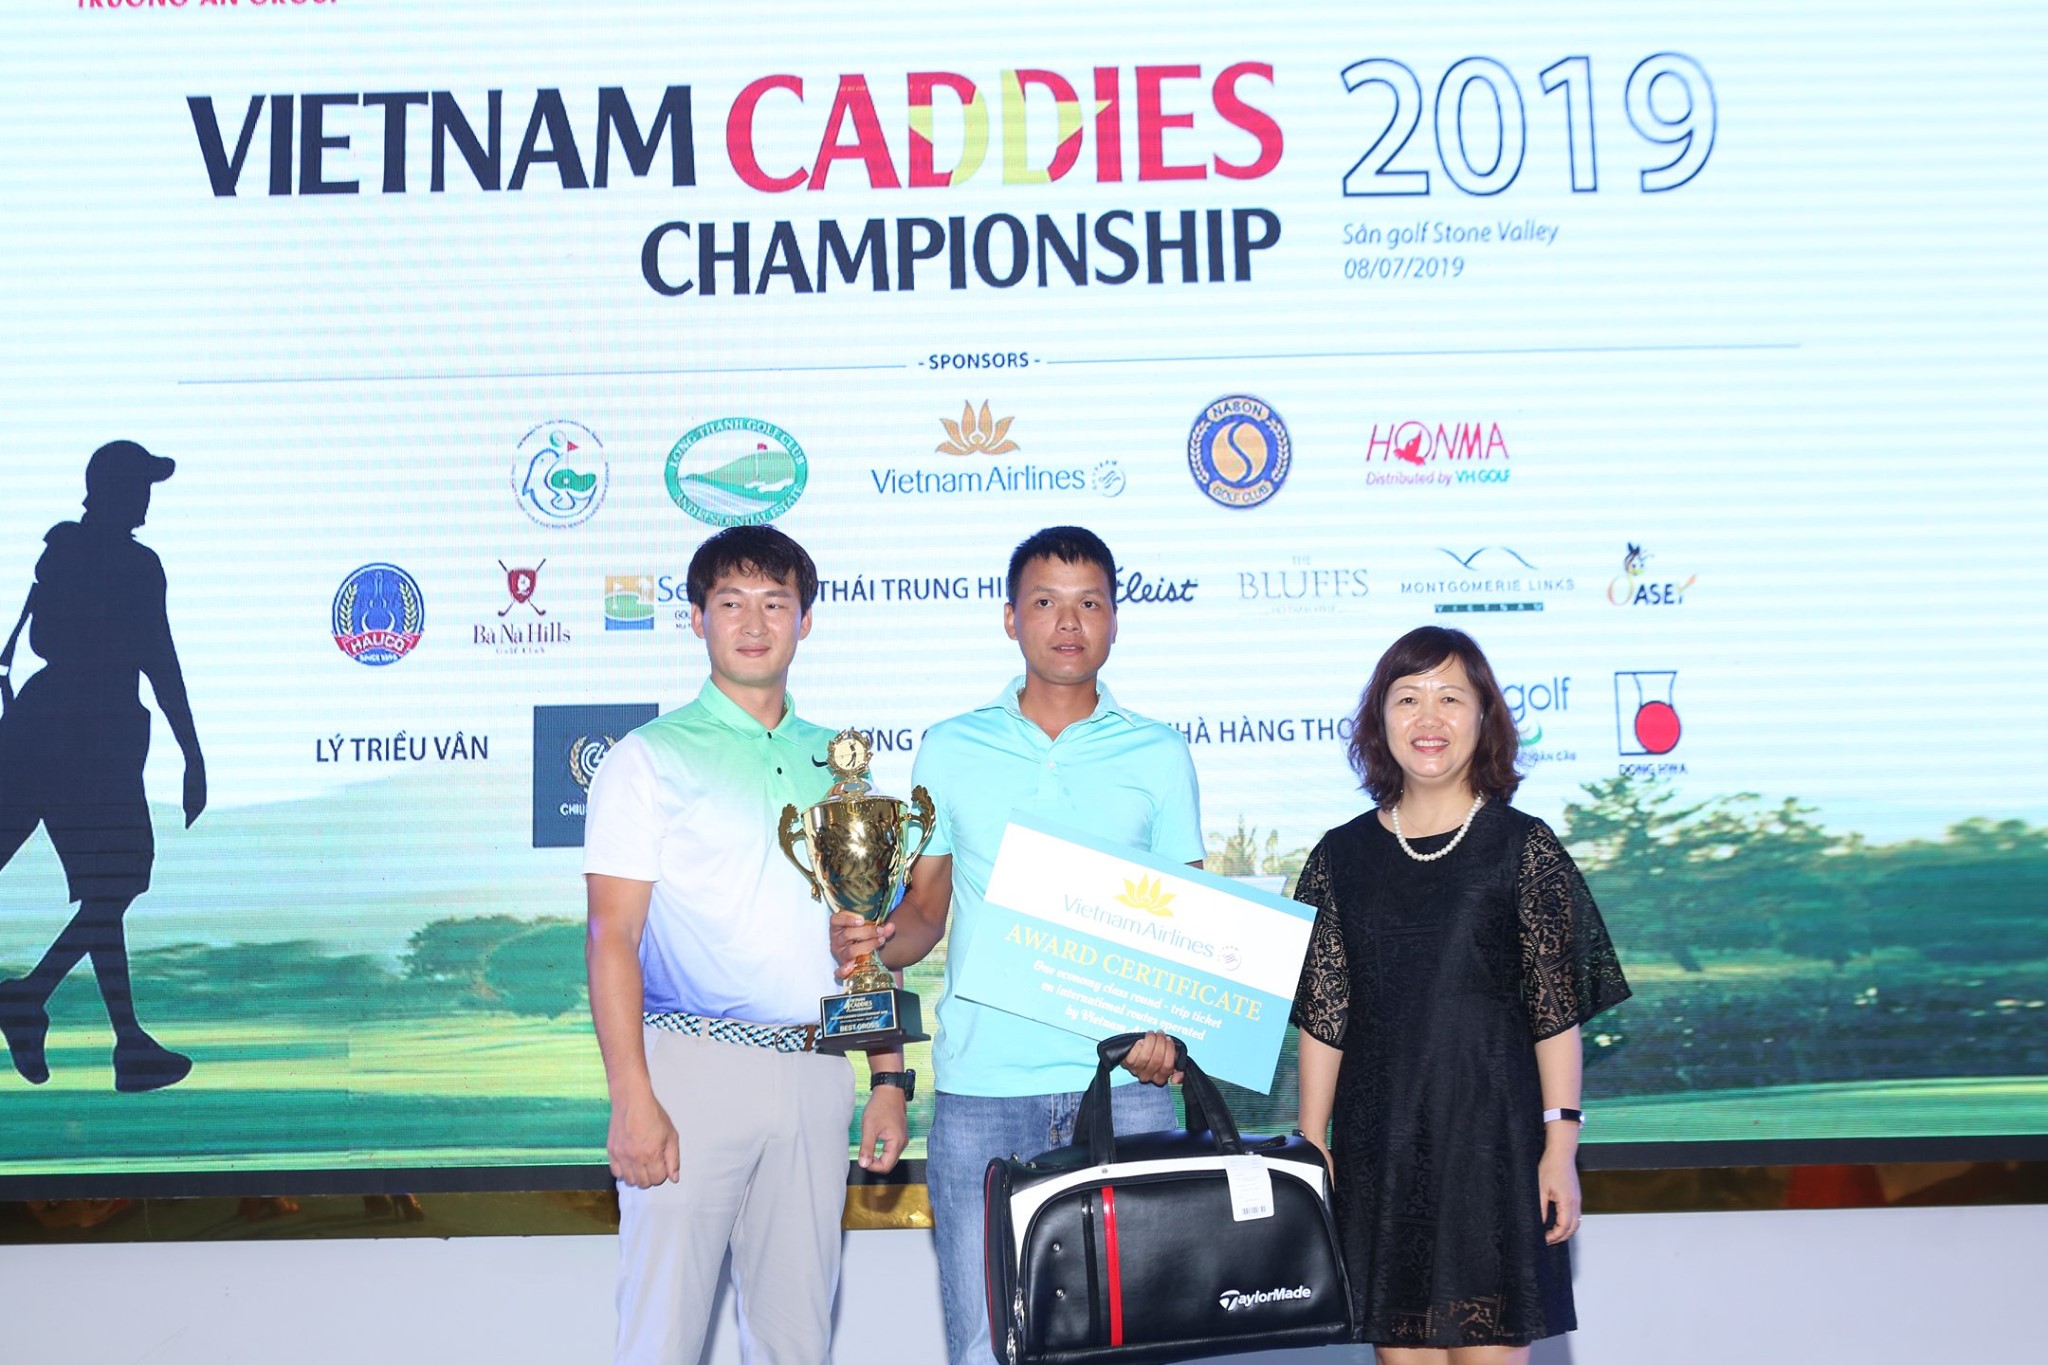 Nguyễn Đức Nhân lên ngôi tại Vietnam Caddies Championship 2019 khu vực miền Bắc